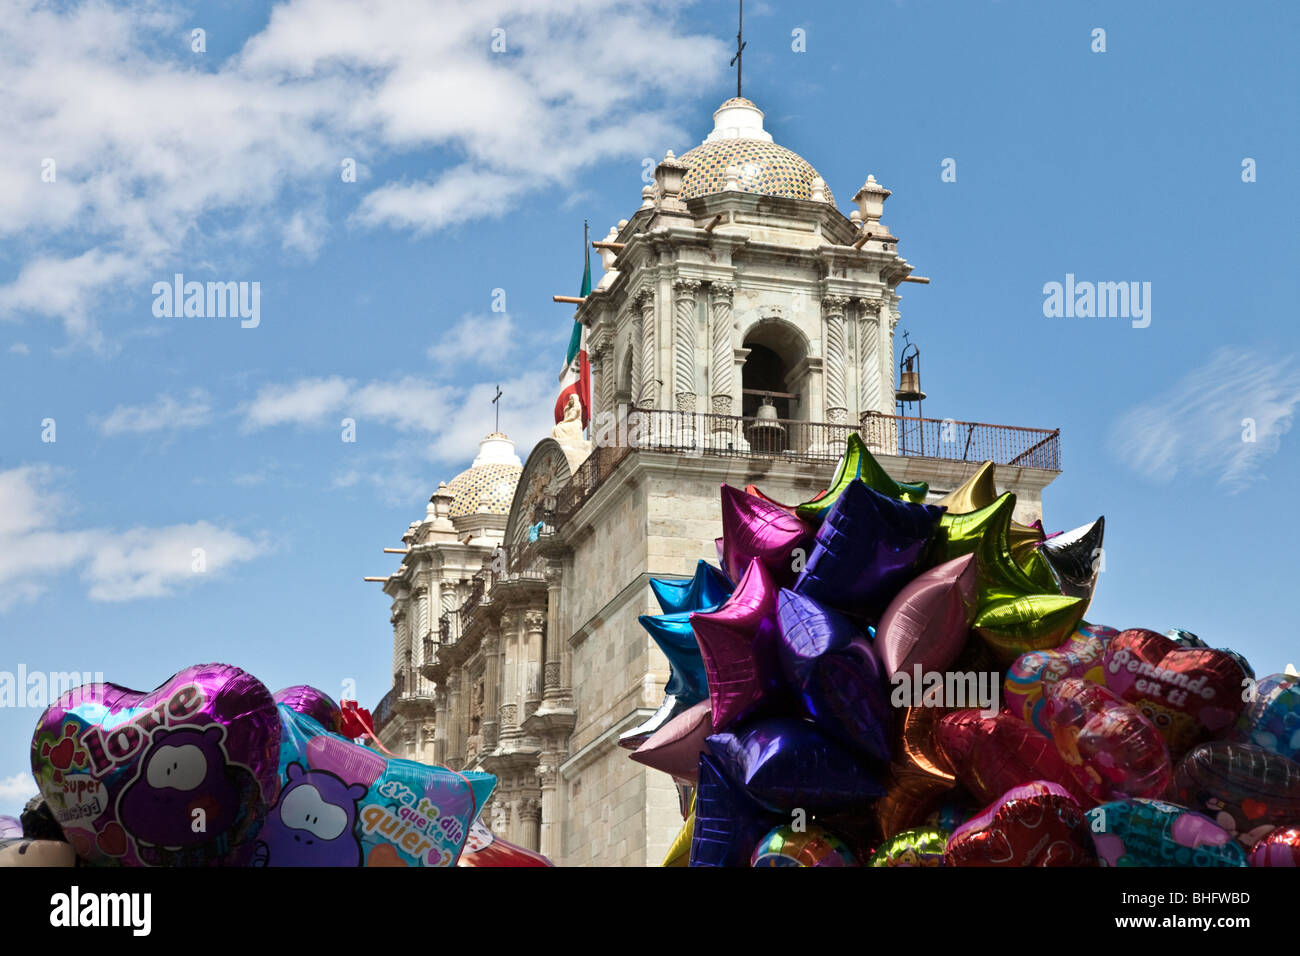 Les clochers de la cathédrale de Oaxaca sont encadrées par deux montagnes de ballons d'hélium à vendre dans le Zocalo ci-dessous Banque D'Images